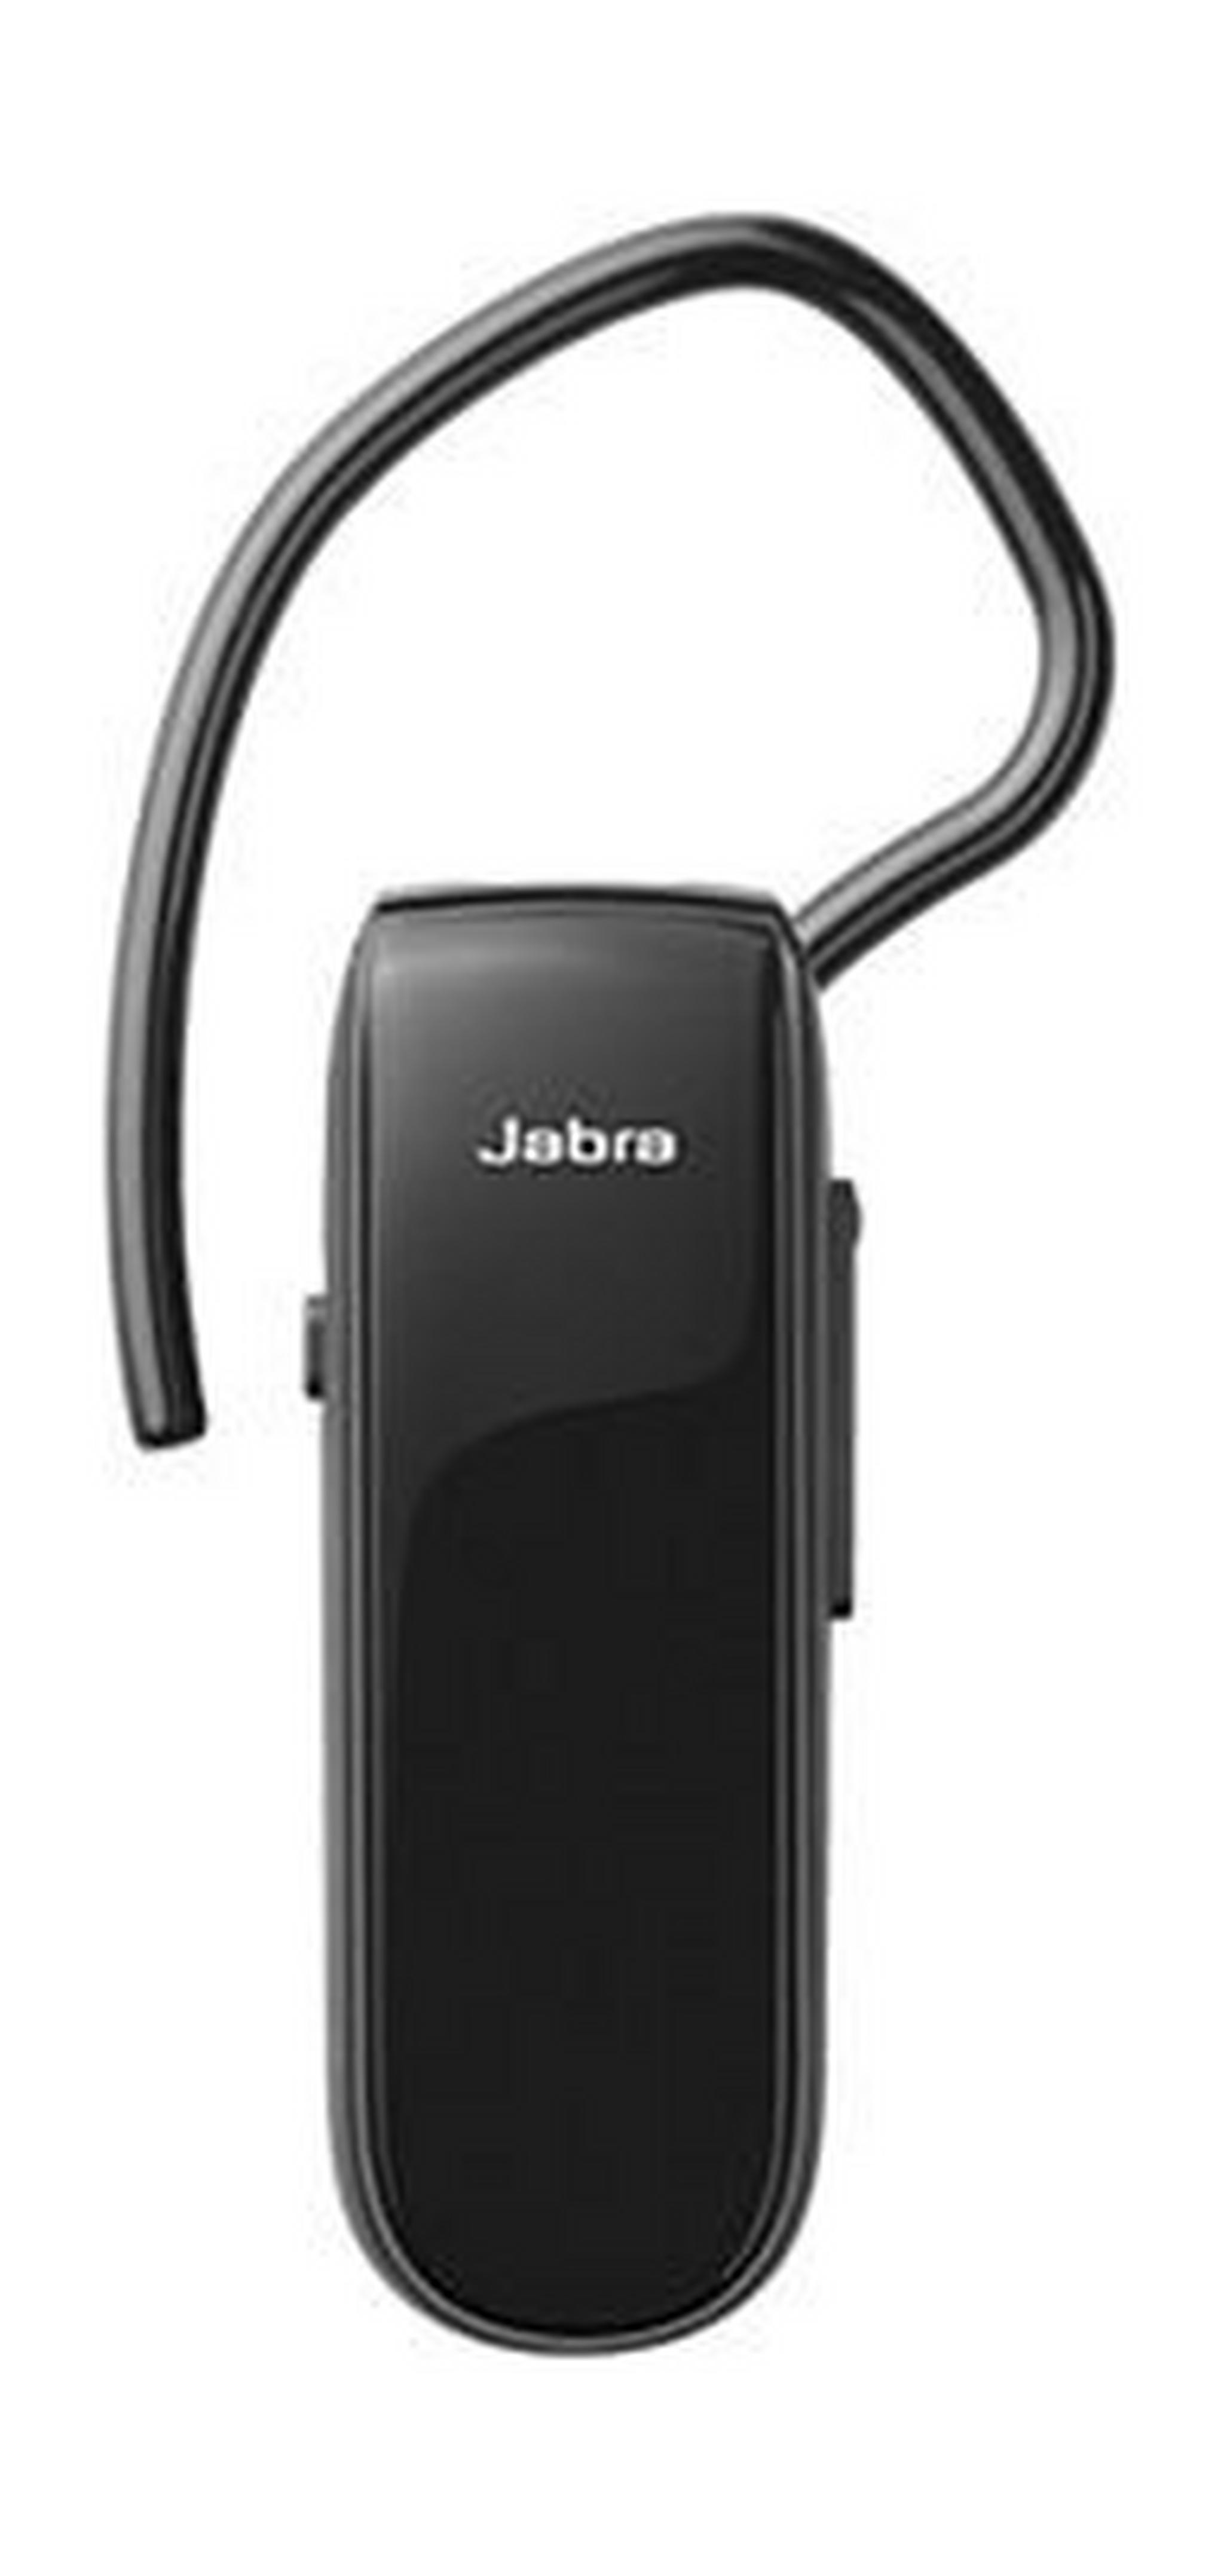 سماعة الأذن اللاسلكية كلاسيك بتقنية بلوتوث من جابرا - أسود